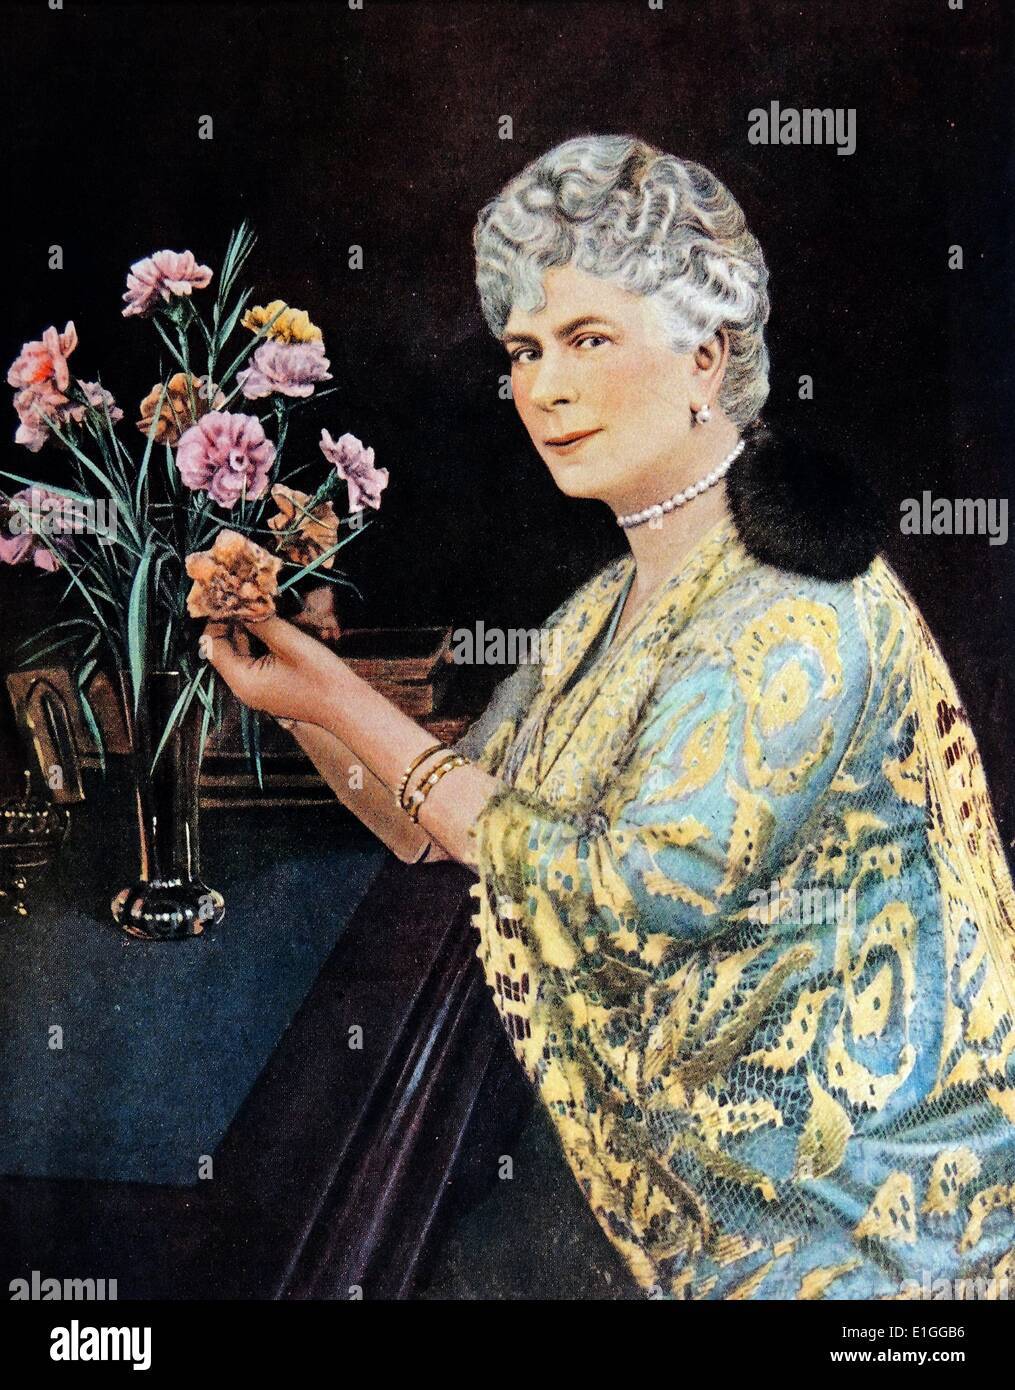 Peinture de Mary de teck (1867 - 1953). Mary de teck est la reine du Royaume-Uni et de l'épouse d'King-Emperor 1923 datée du George V. Banque D'Images